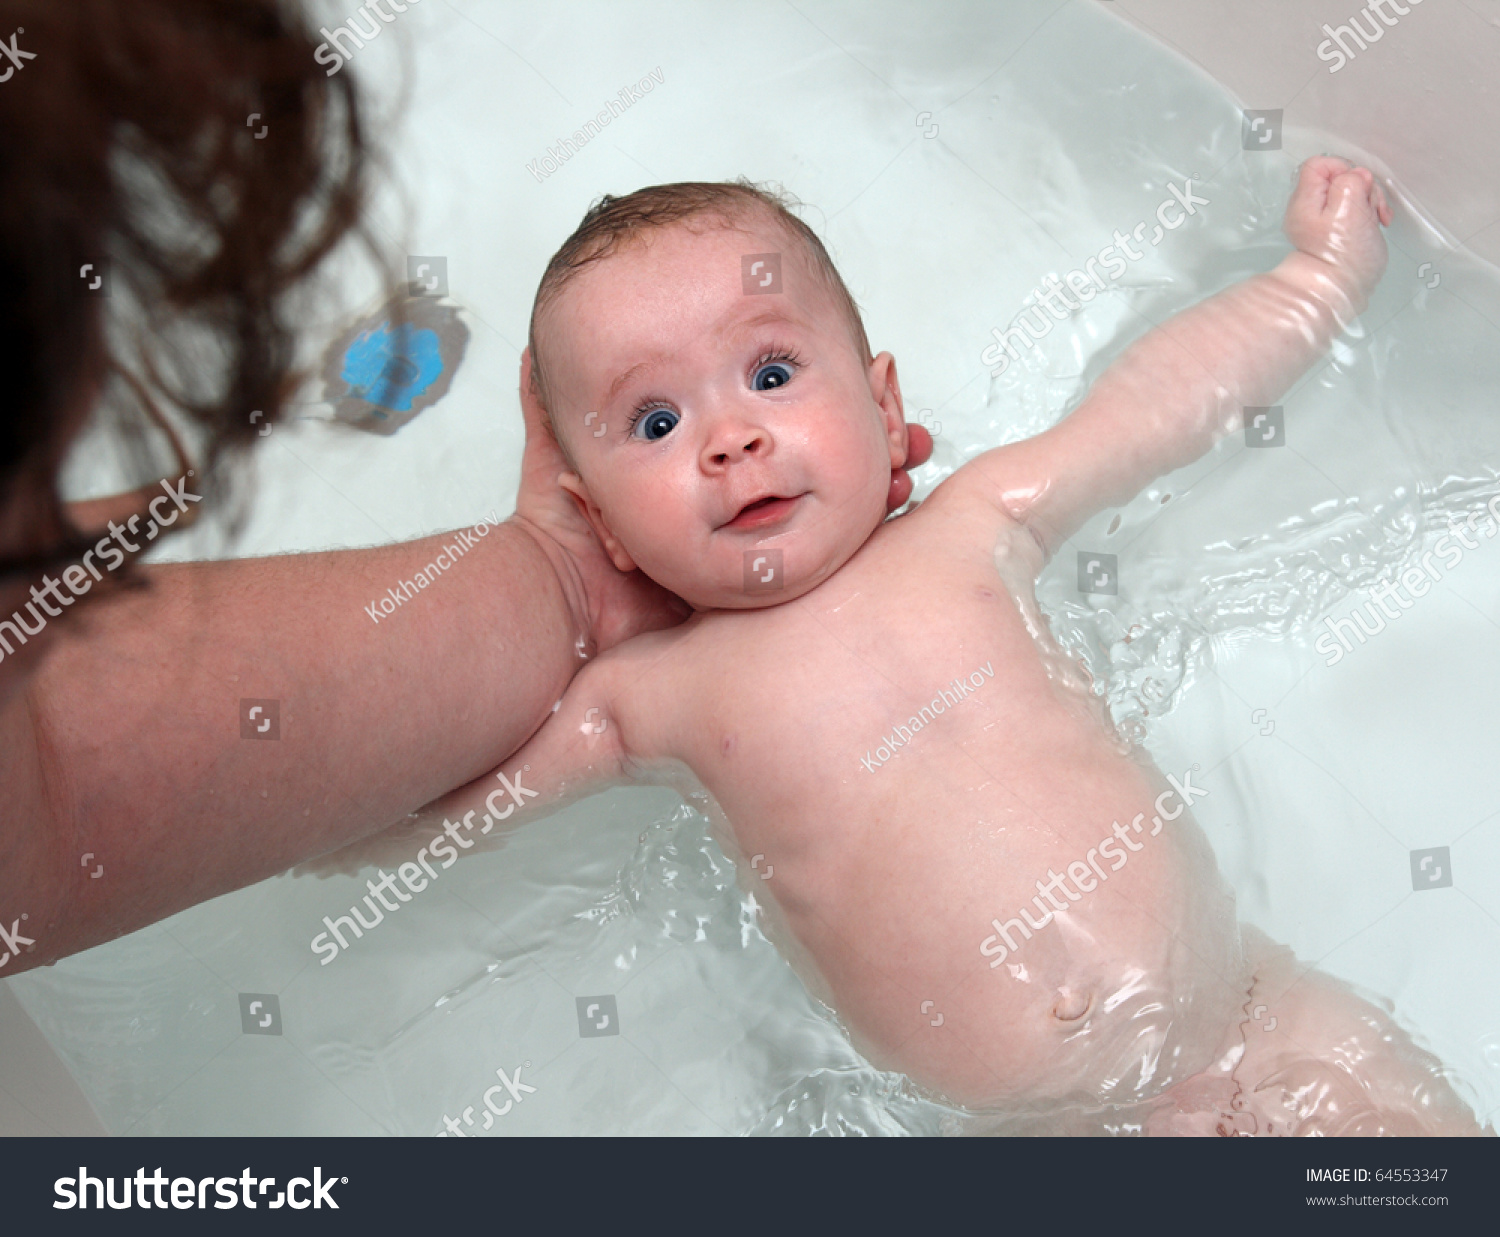 фото детей в ванной